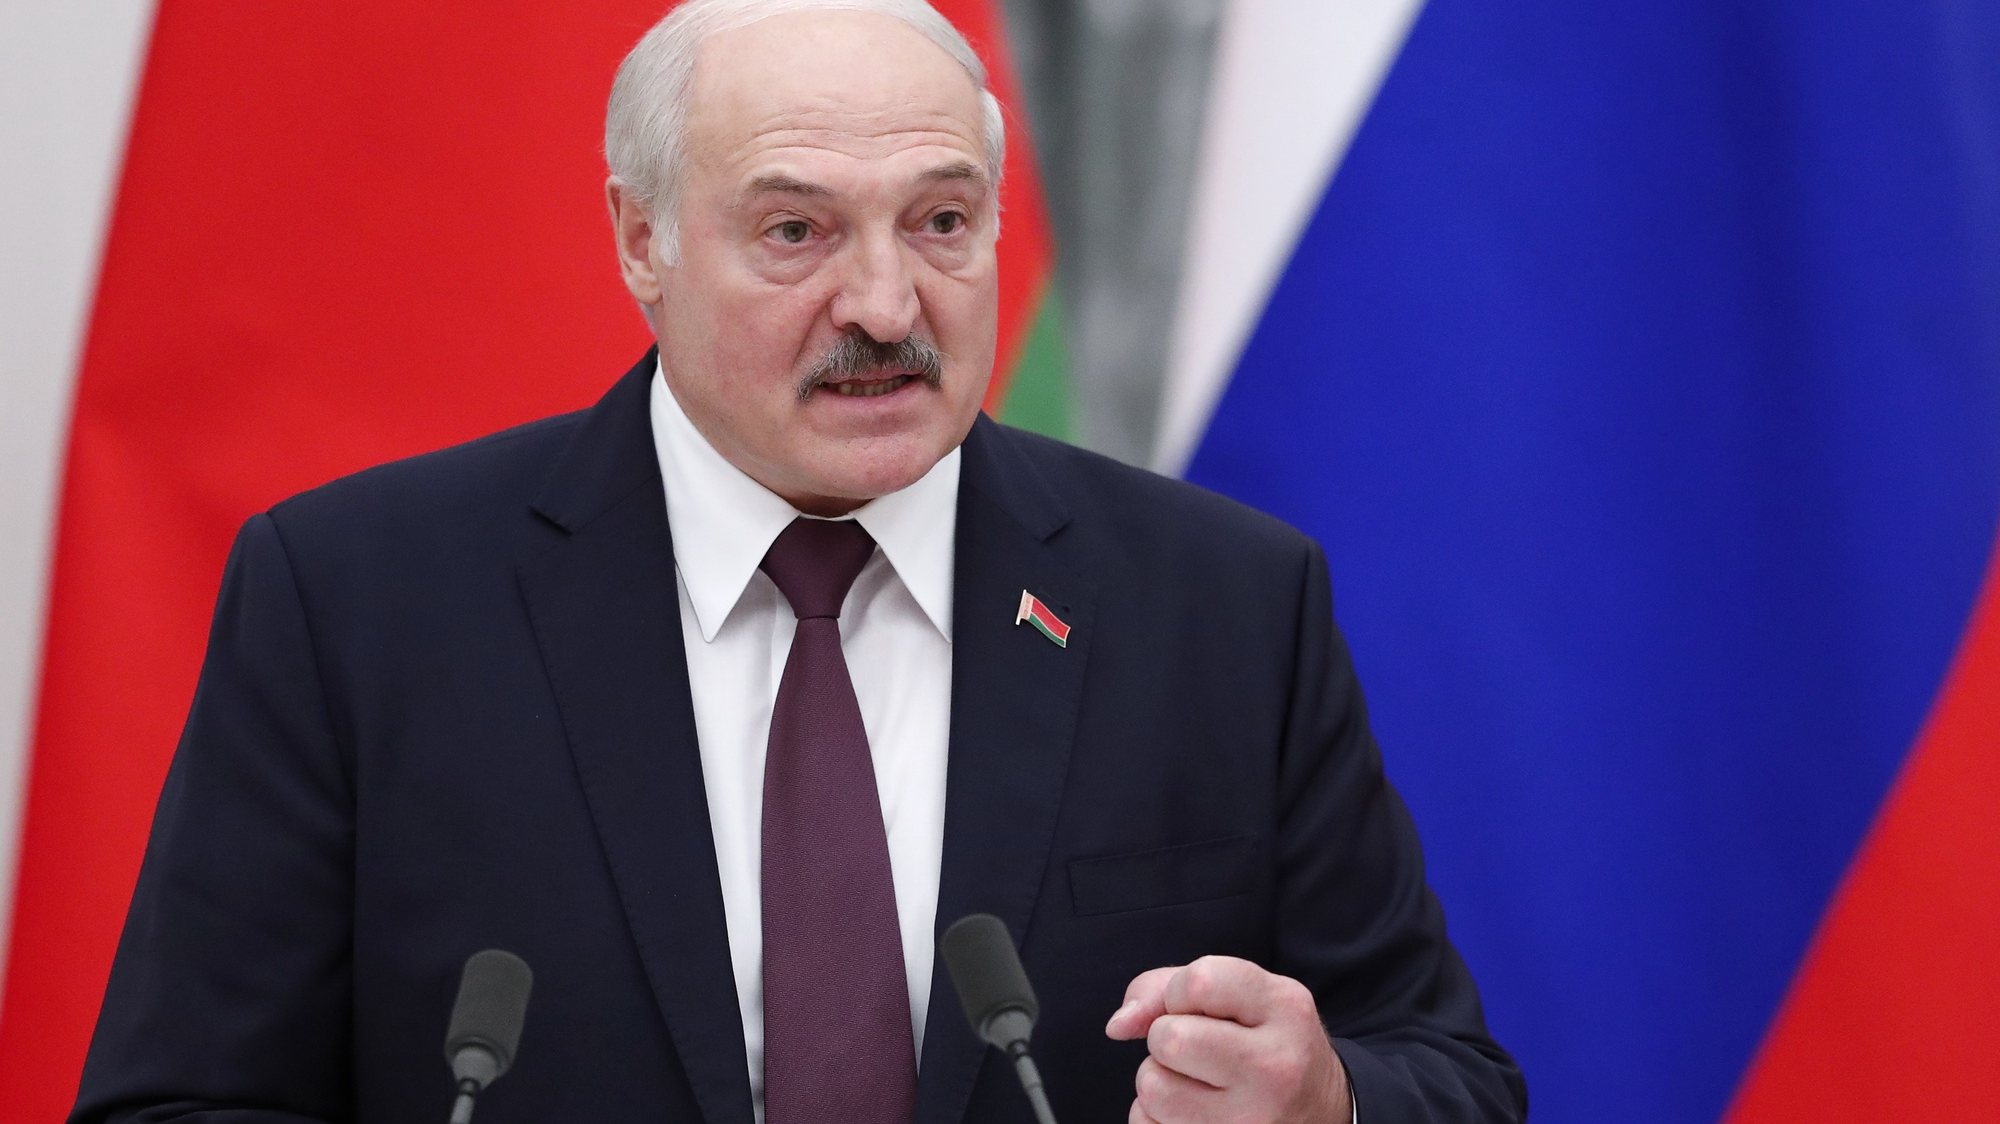 Presidente bielorrusso Alexander Lukashenko